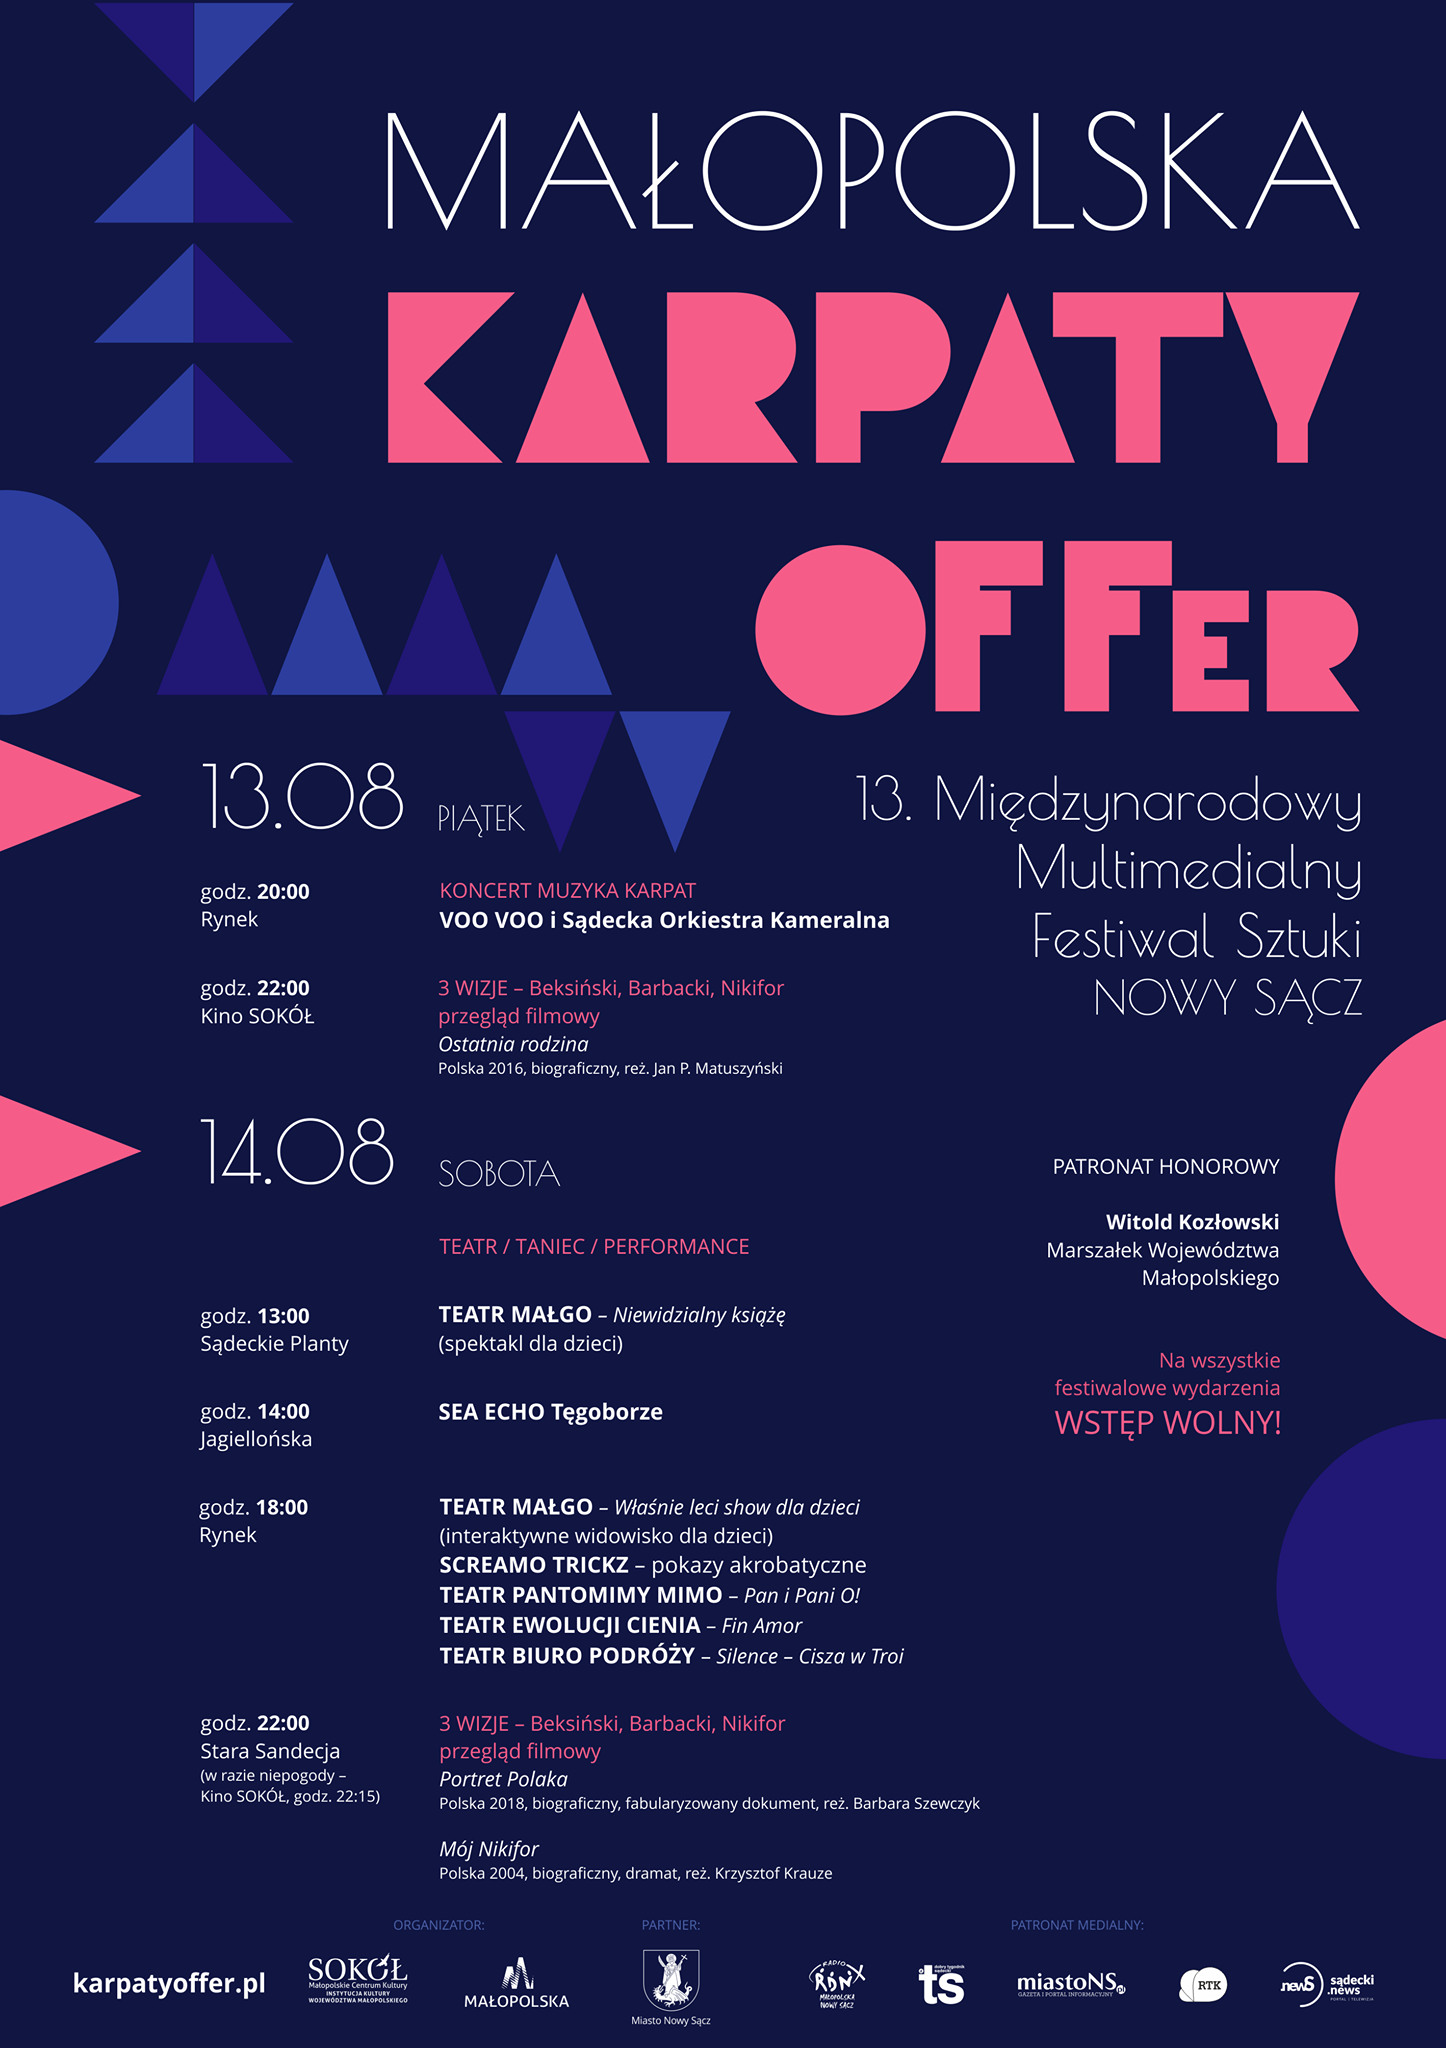 Małopolska Karpaty OFFer - plakat promujący wydarzenie.